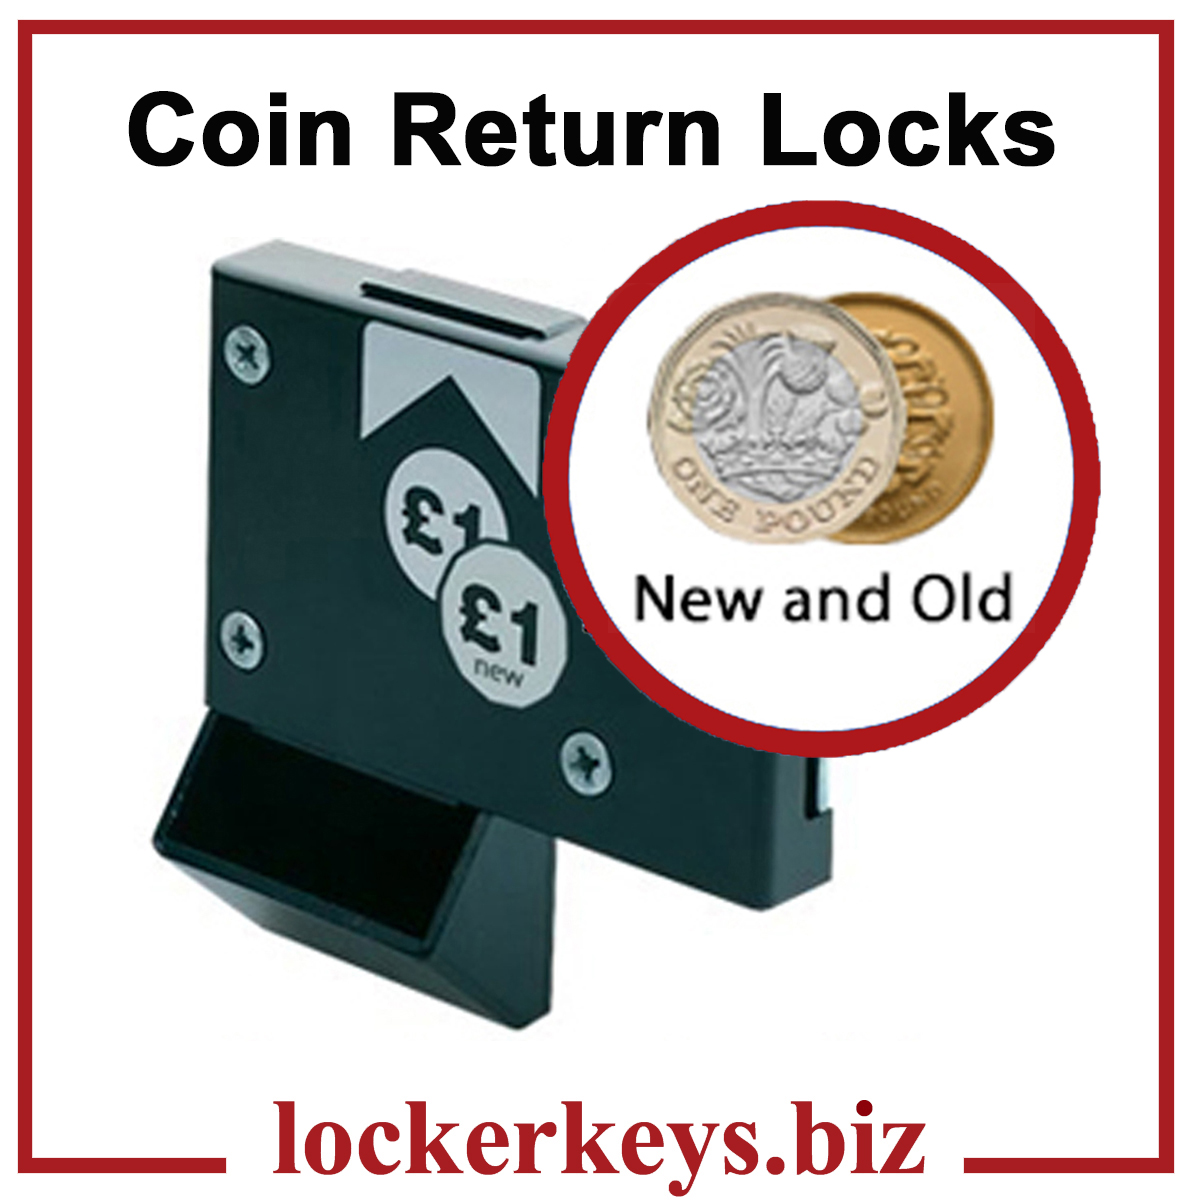 £1 Coin Return Locks